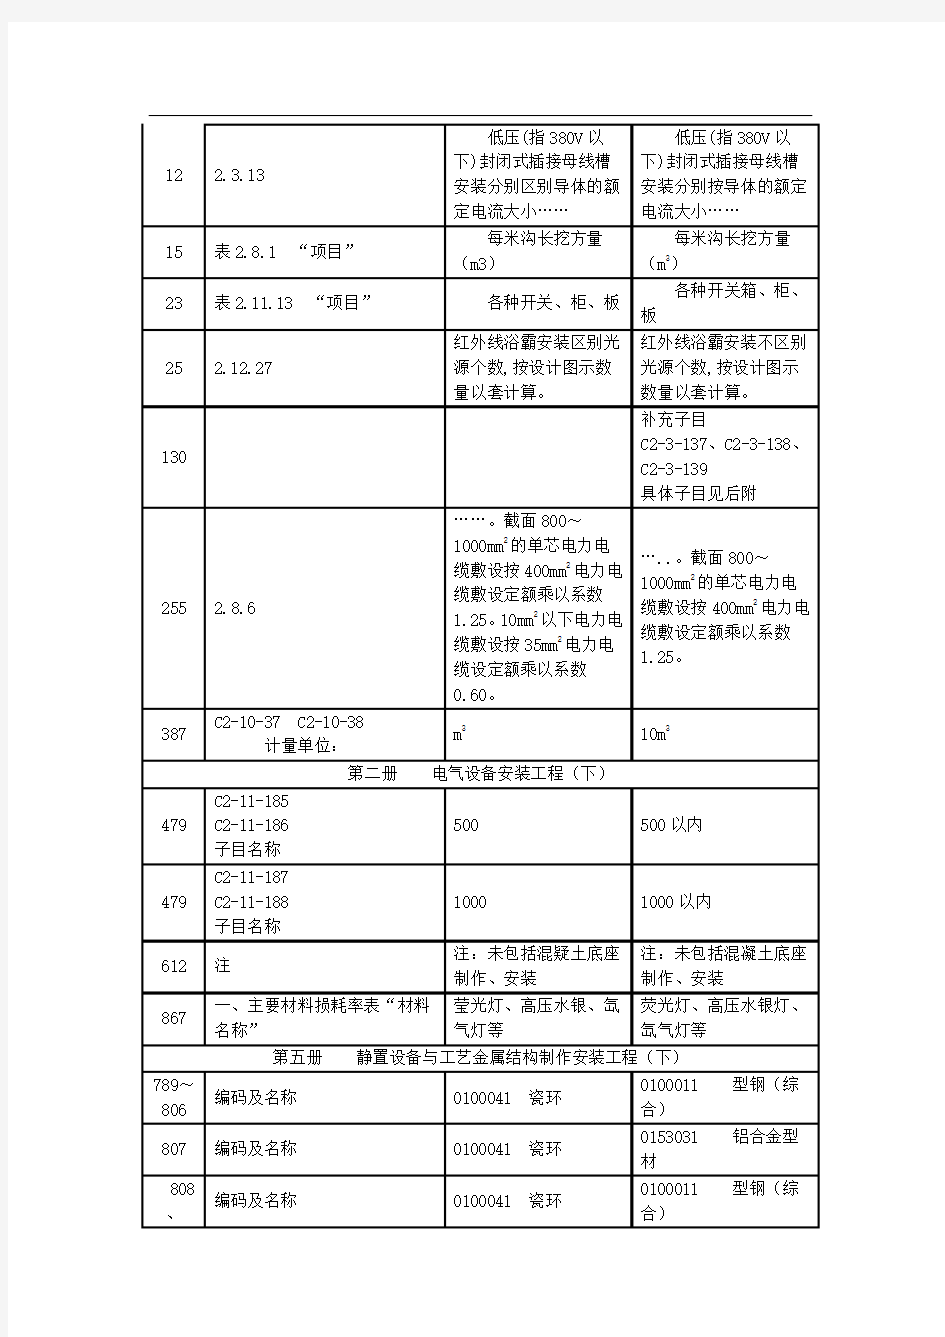 @《广东省安装工程综合定额(2010)》问题解答